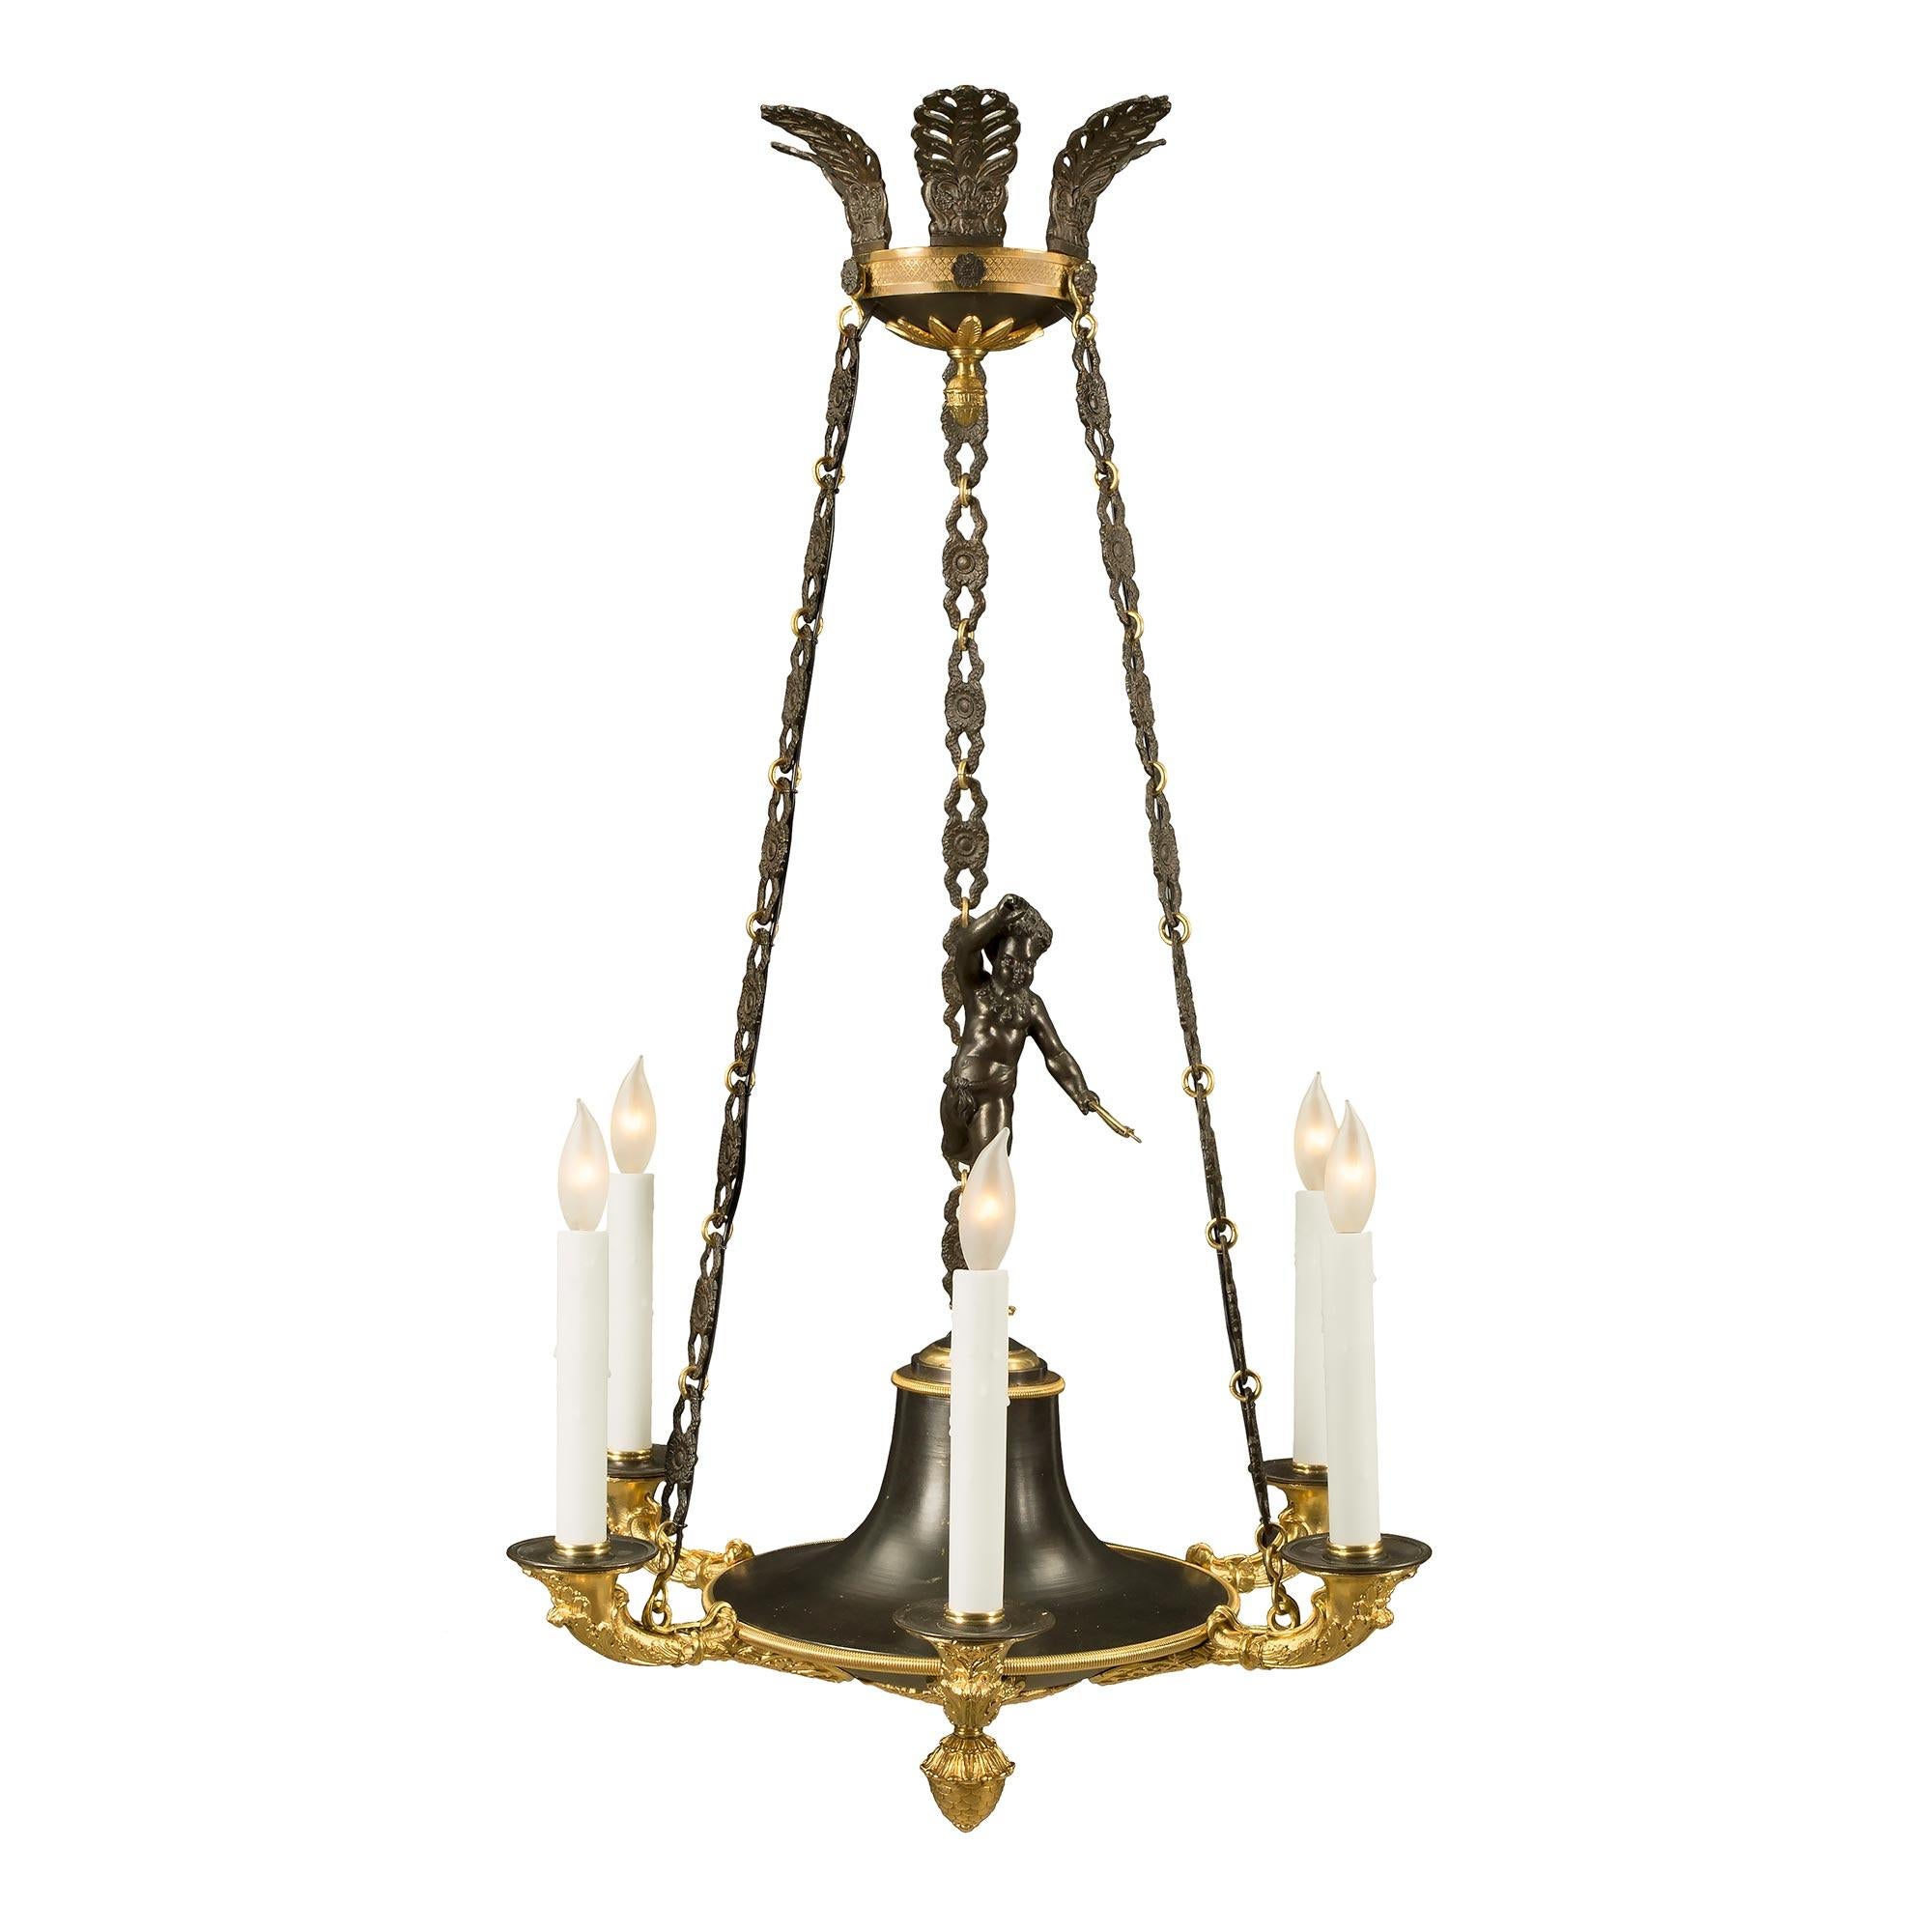 Un élégant et très charmant lustre à six lumières de style néo-classique français du 19ème siècle, en bronze patiné et bronze doré. Le lustre est centré par une belle finale inférieure en bronze doré sous le corps en bronze patiné décoré de jolis